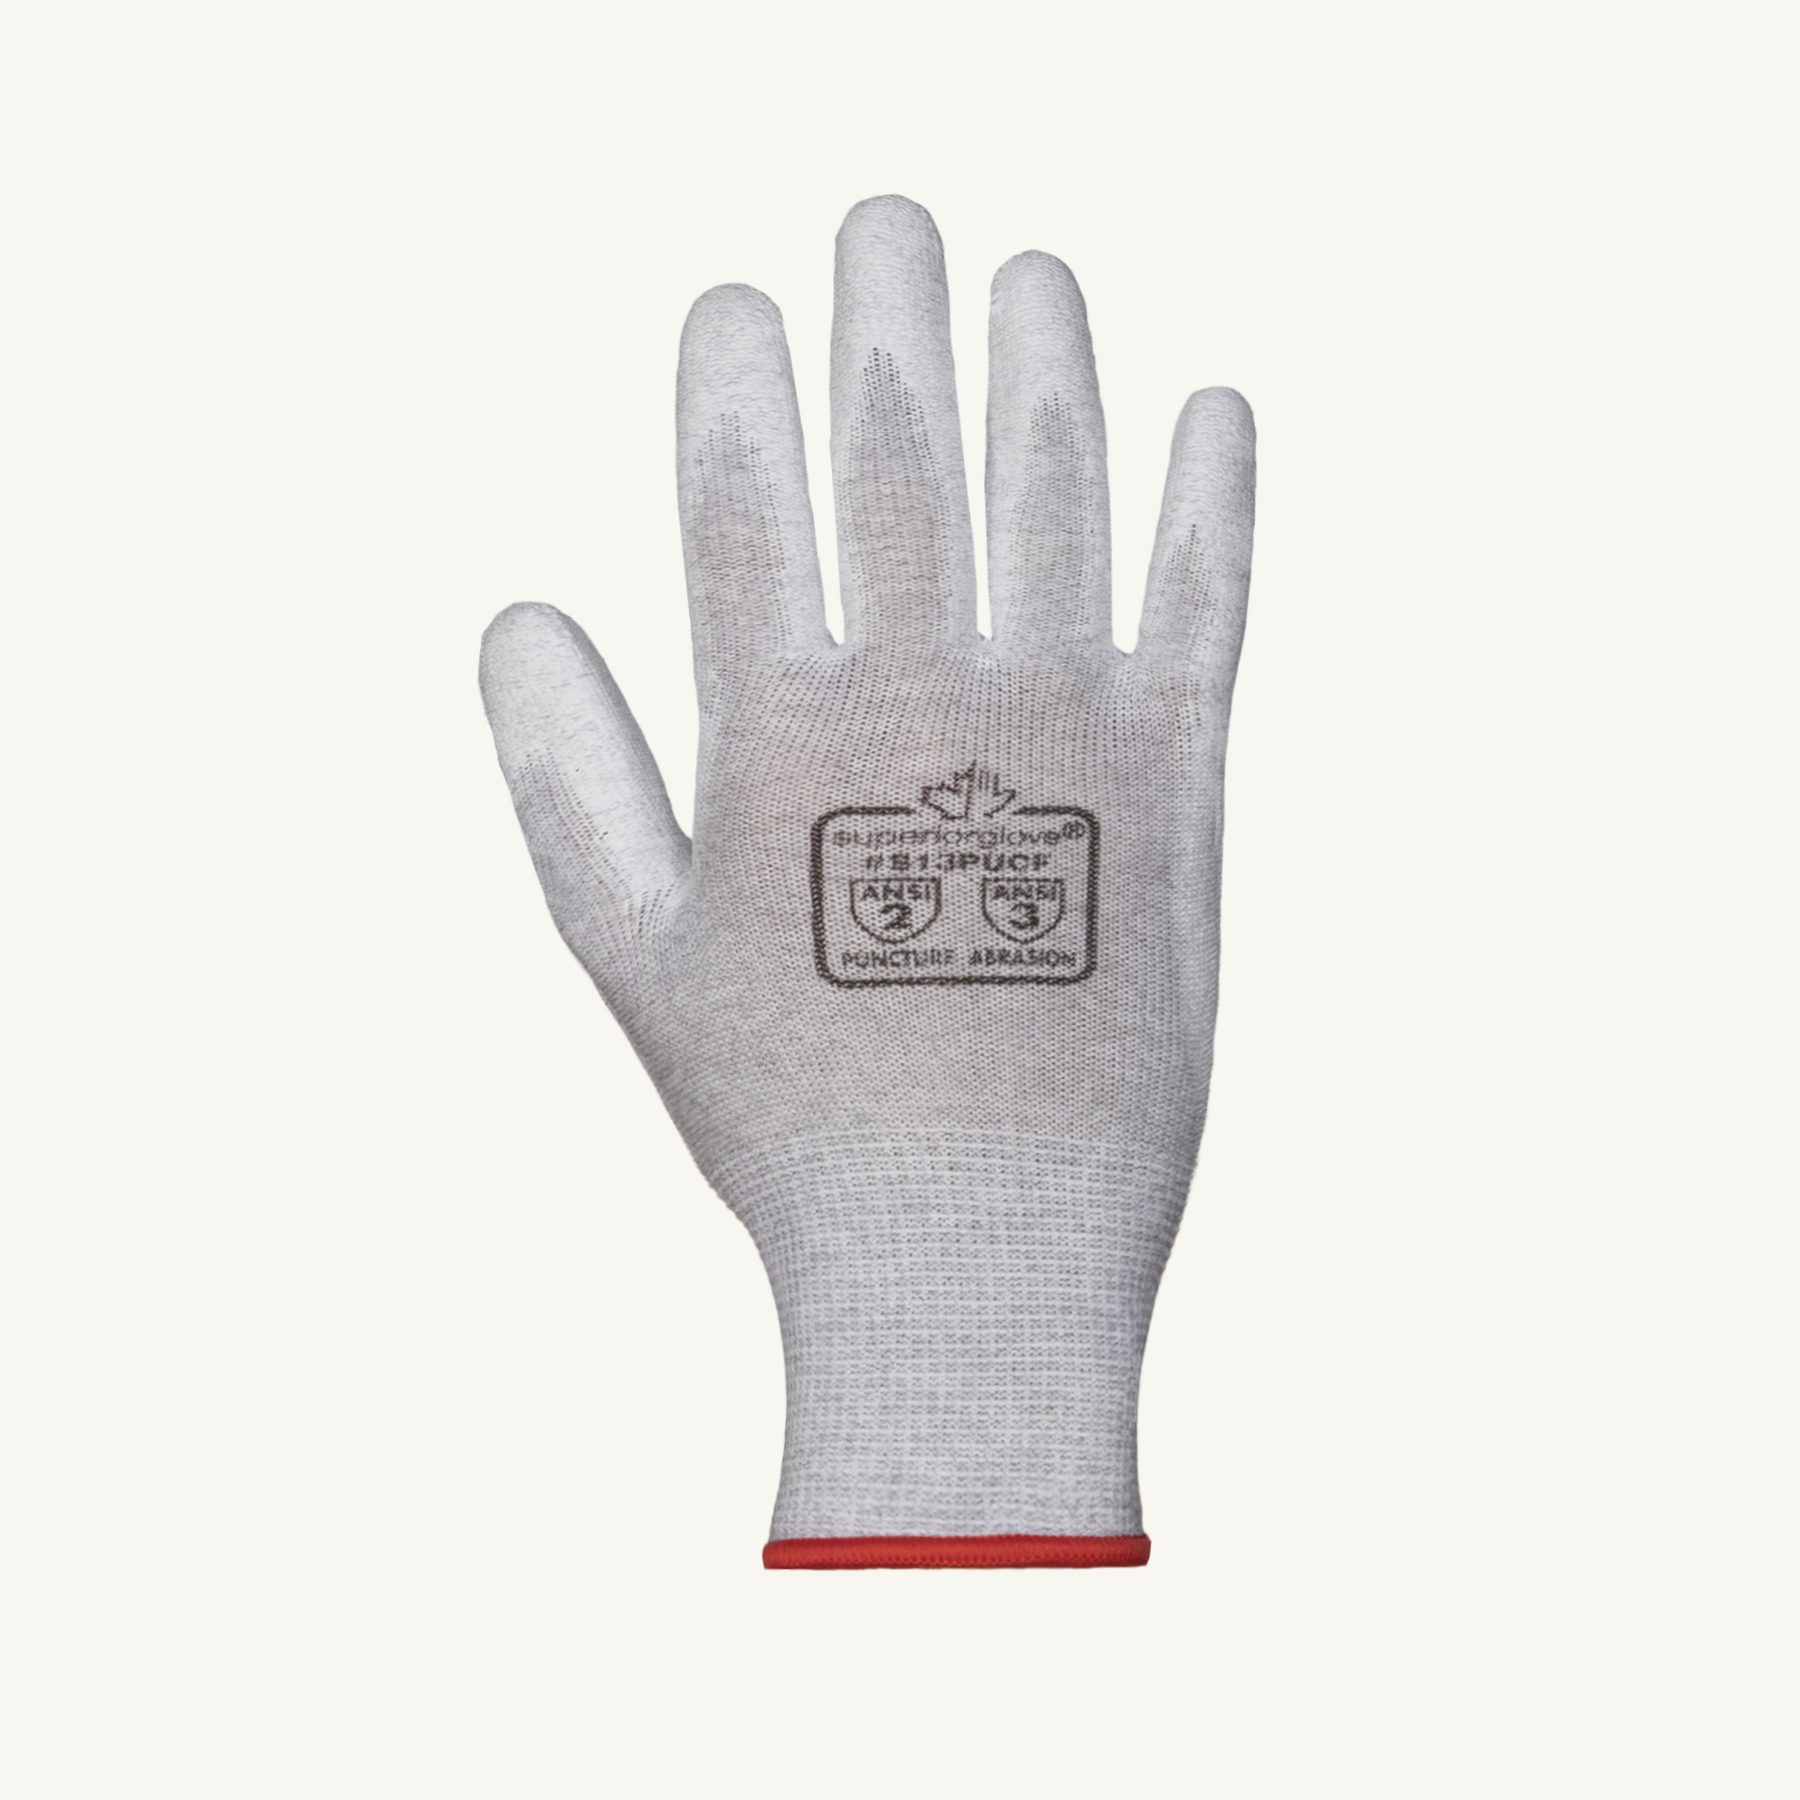 Gants de protection KCL 105-9 Taille 9 (L) 100% tricot coton avec